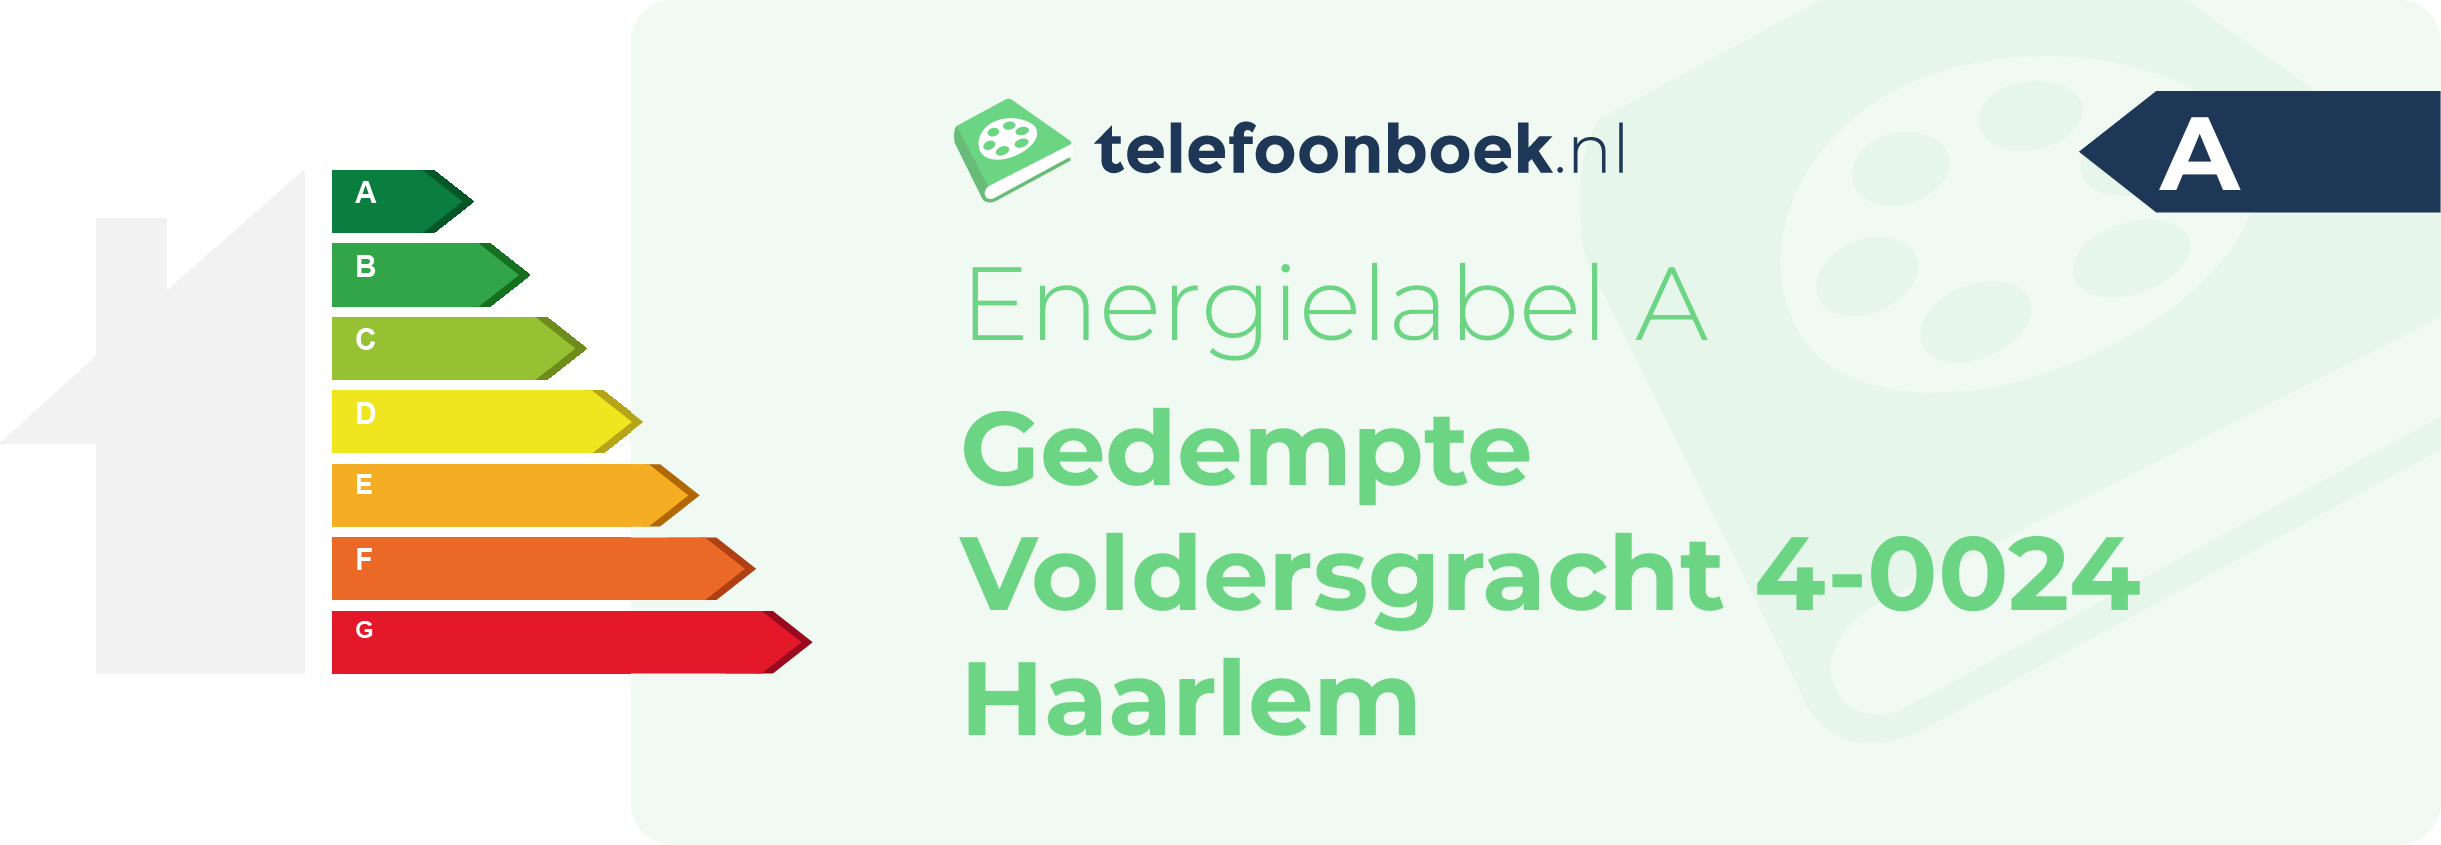 Energielabel Gedempte Voldersgracht 4-0024 Haarlem